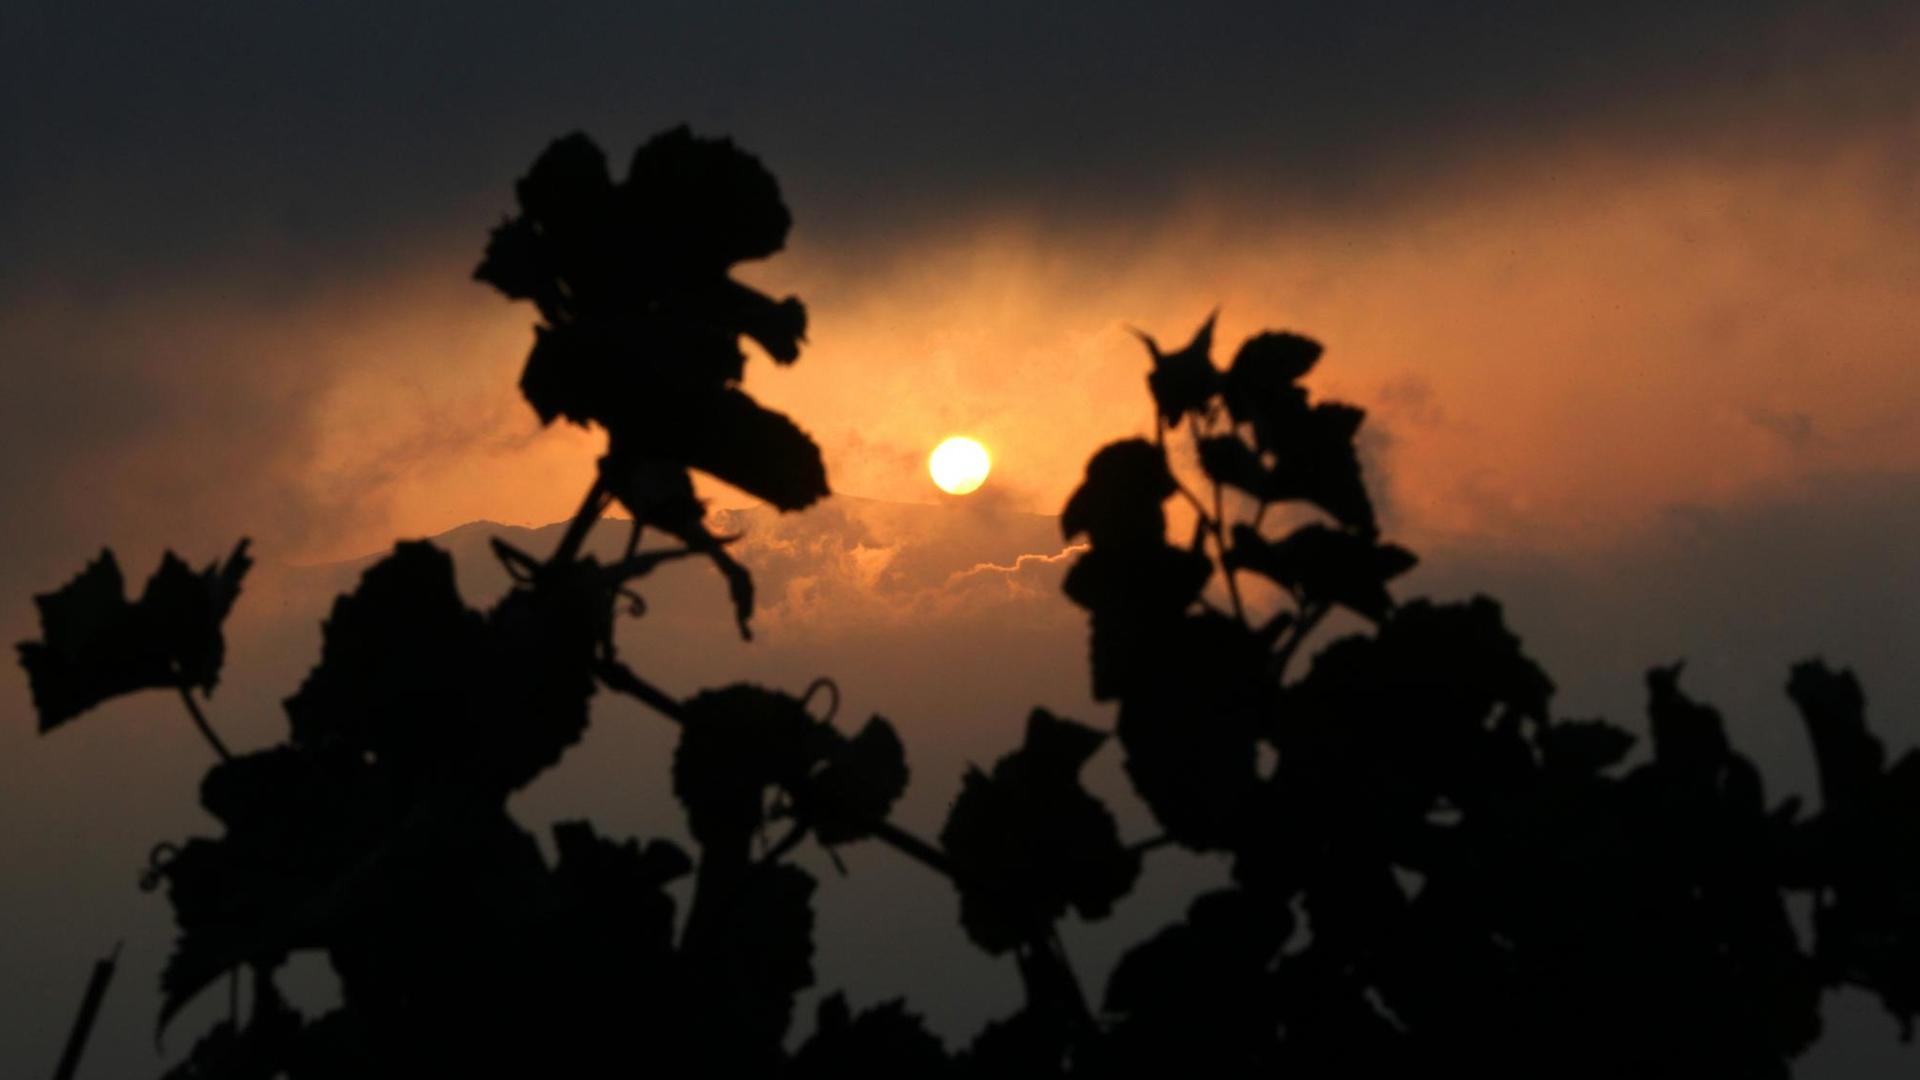 Die Silhouette zweier Weinreben umrahmt die aufgehende Sonne.